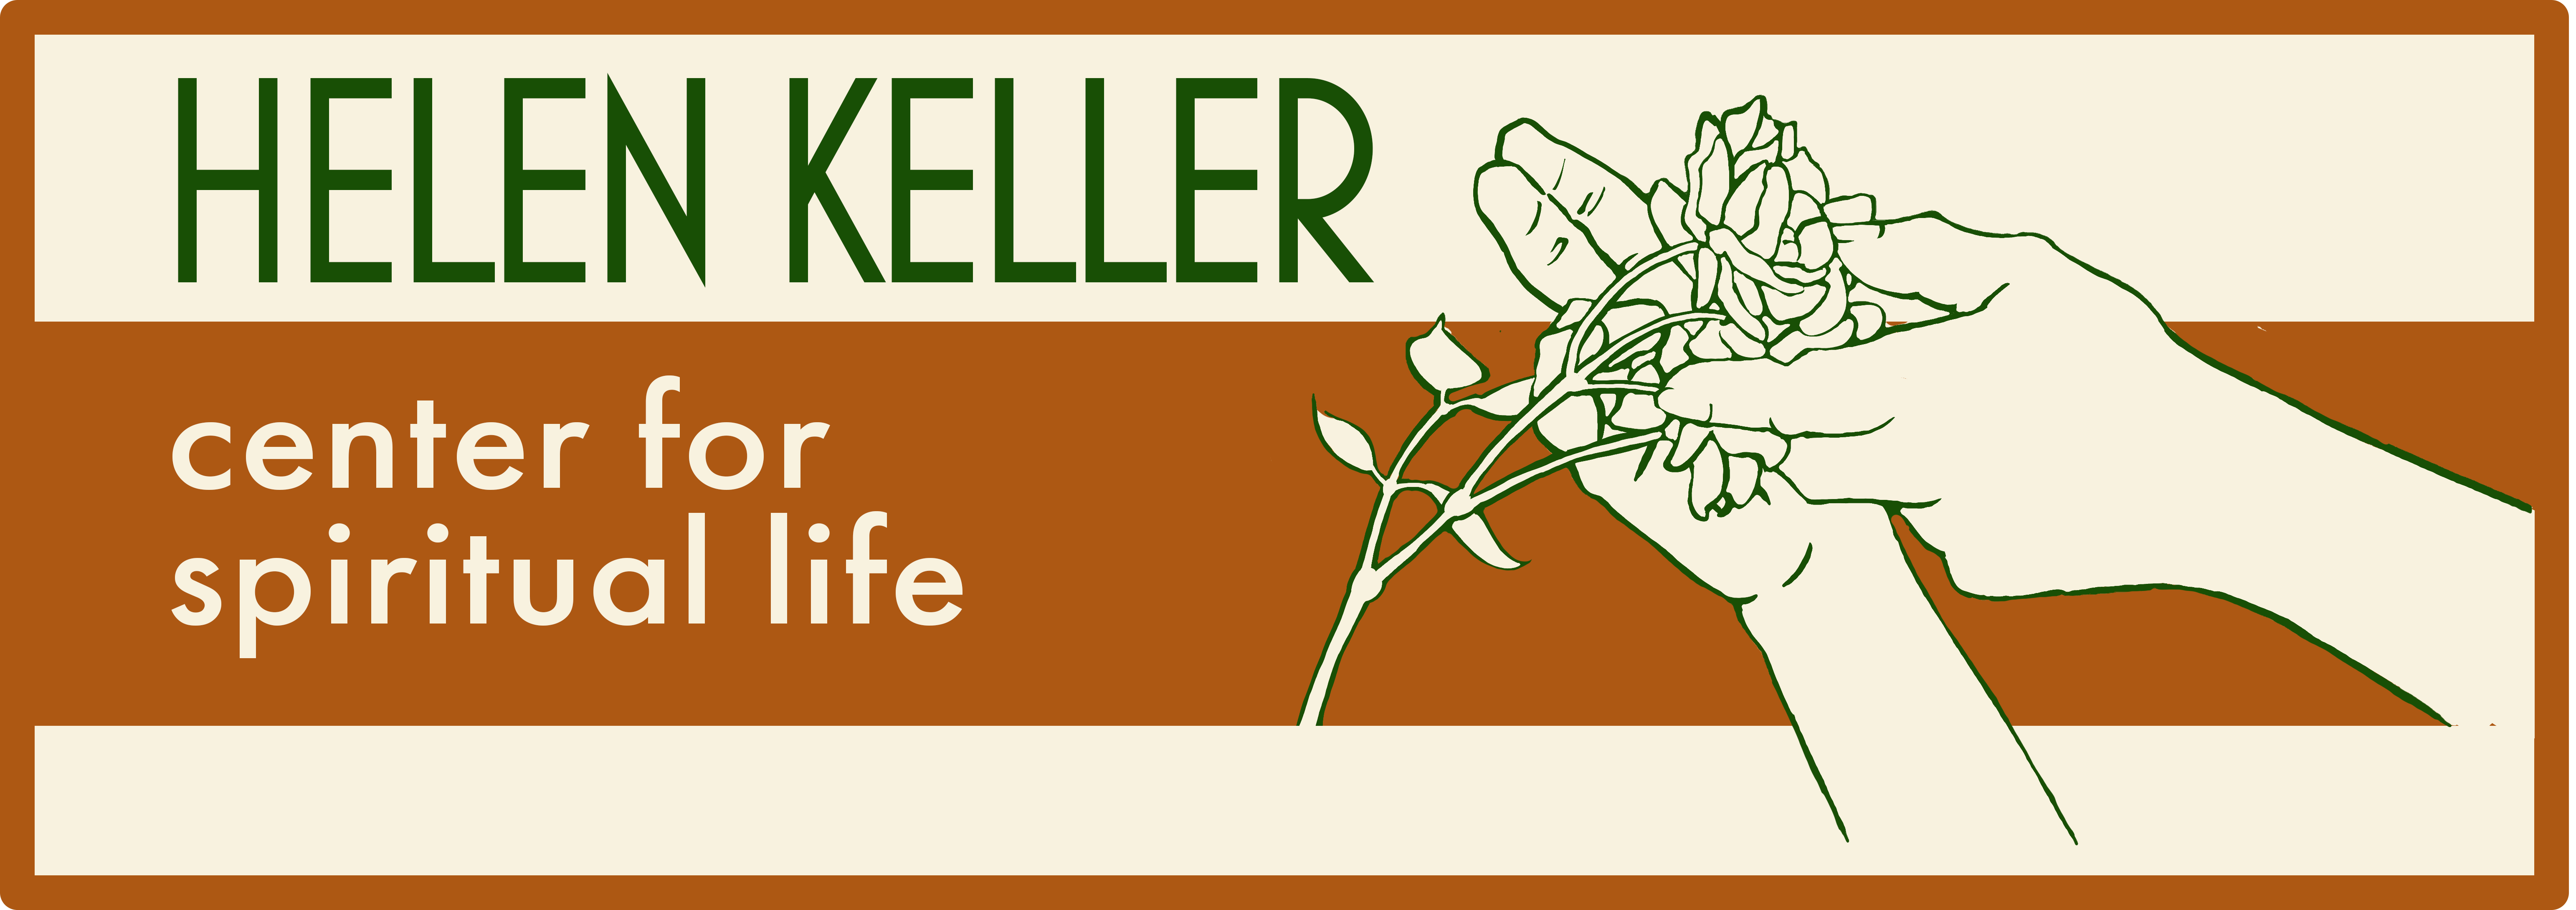 Helen Keller center for spiritual life 